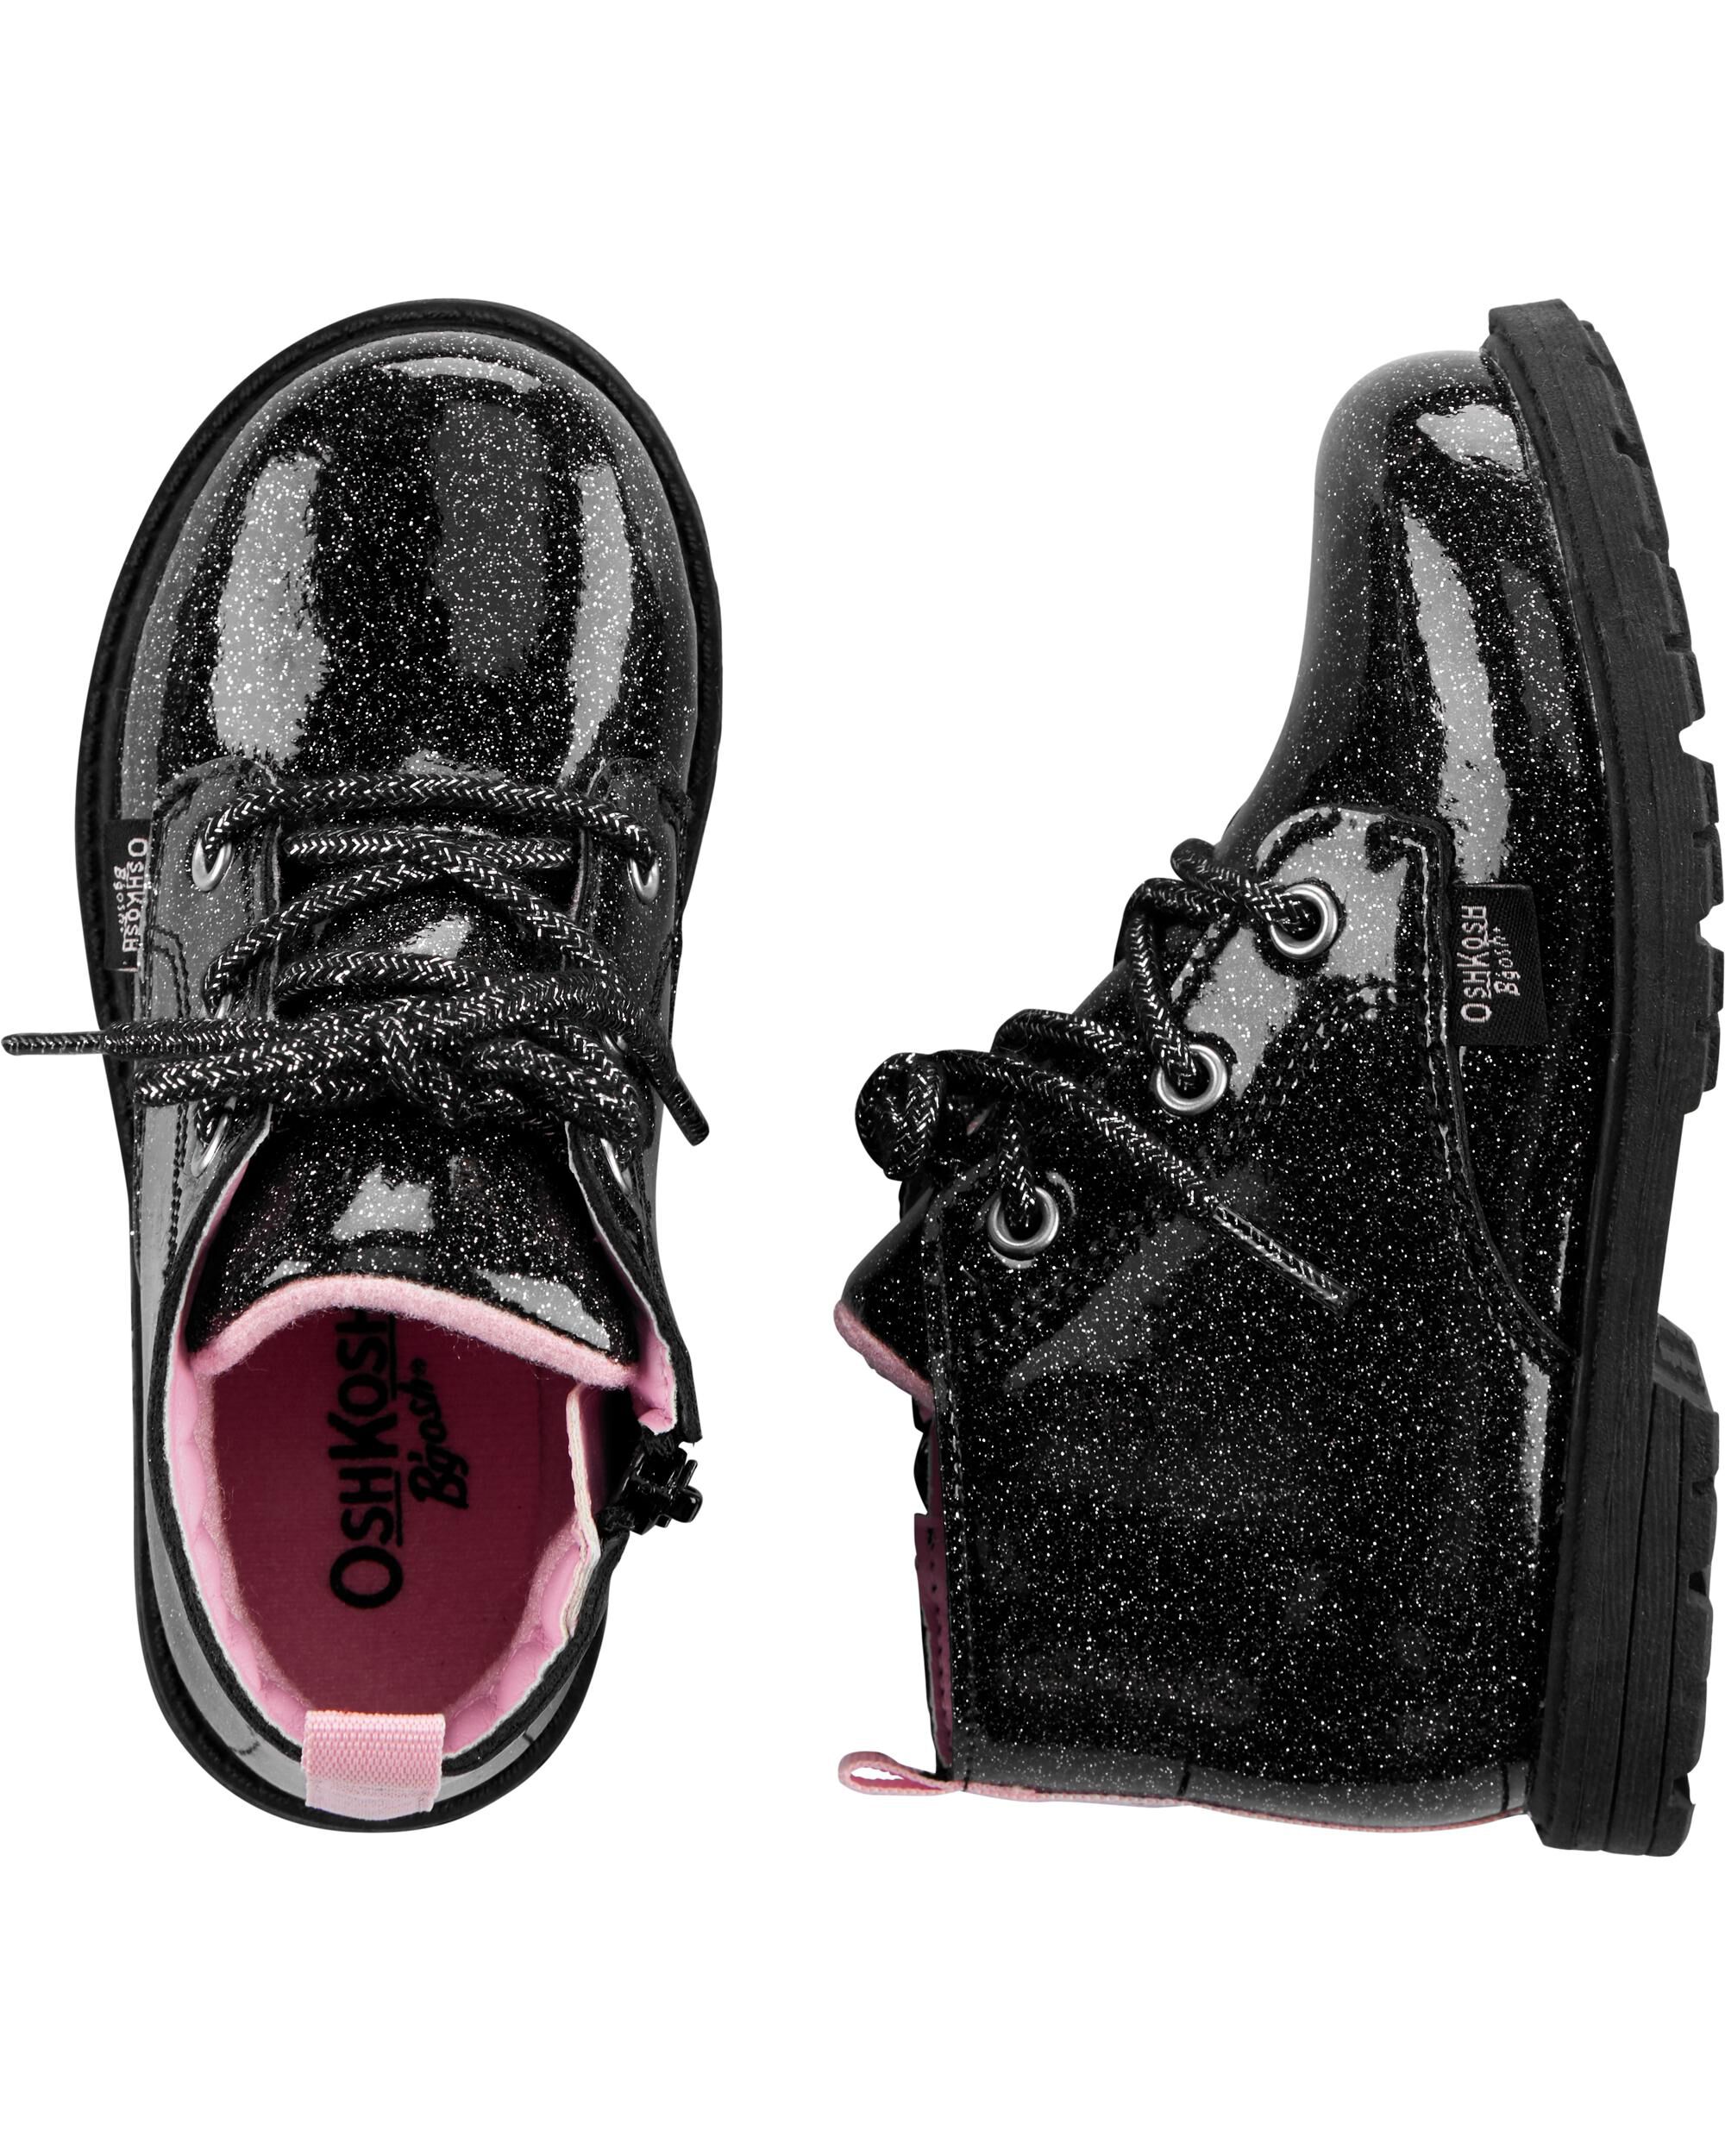 OshKosh Black Glitter Combat Boots 